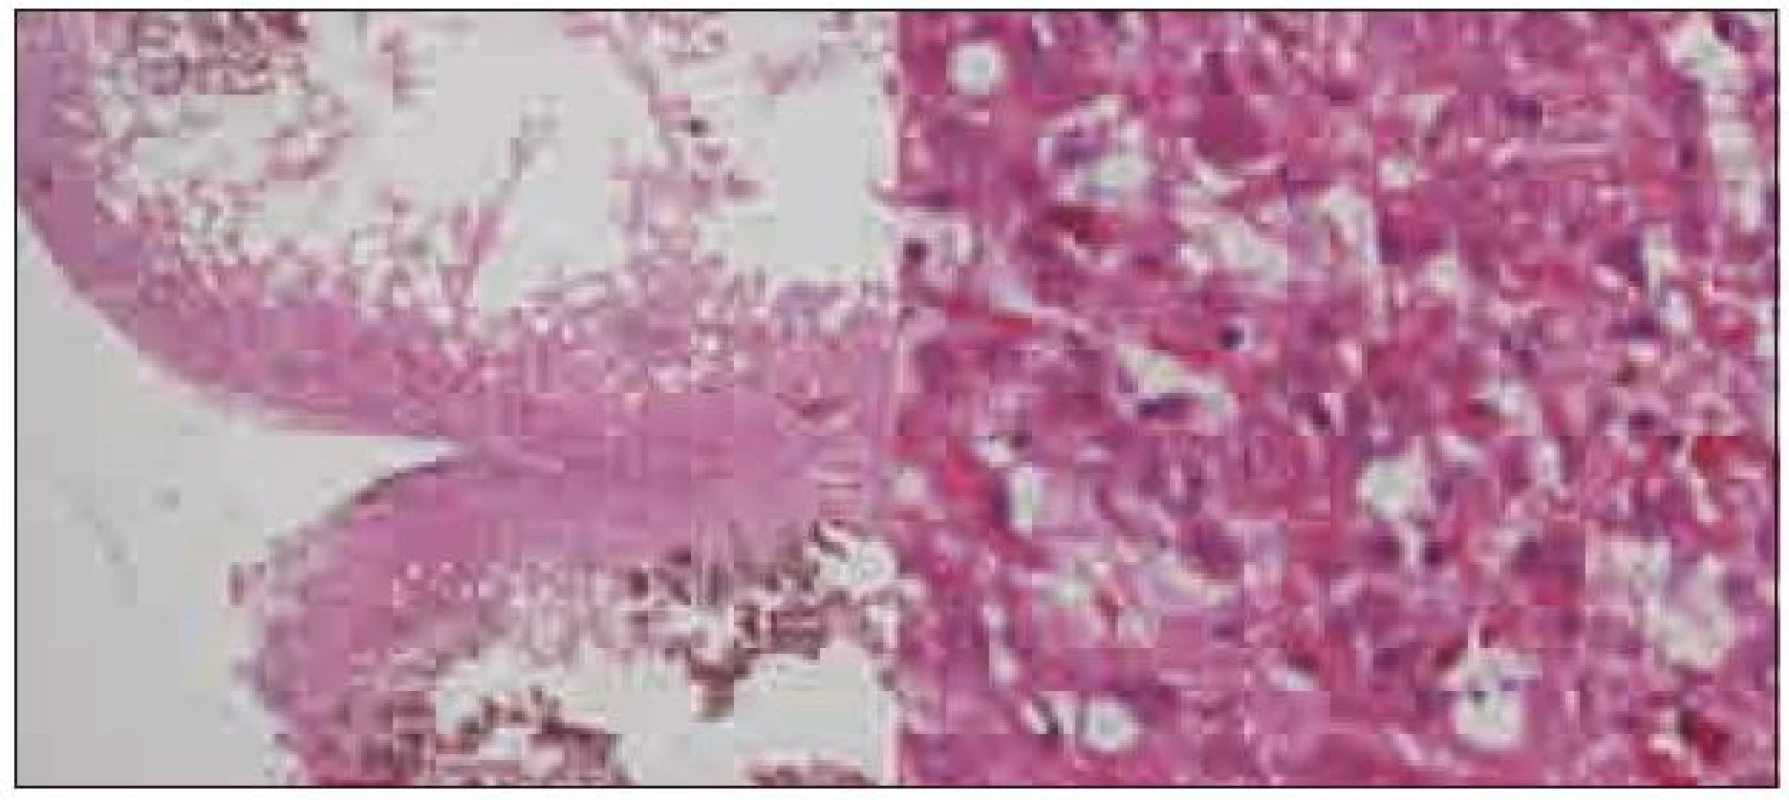 Histologický preparát, vlevo zachovalá rozšířená folia mozečku (HE, 20krát), vpravo dysplastické gangliové buňky kory mozečku (HE, 200krát).